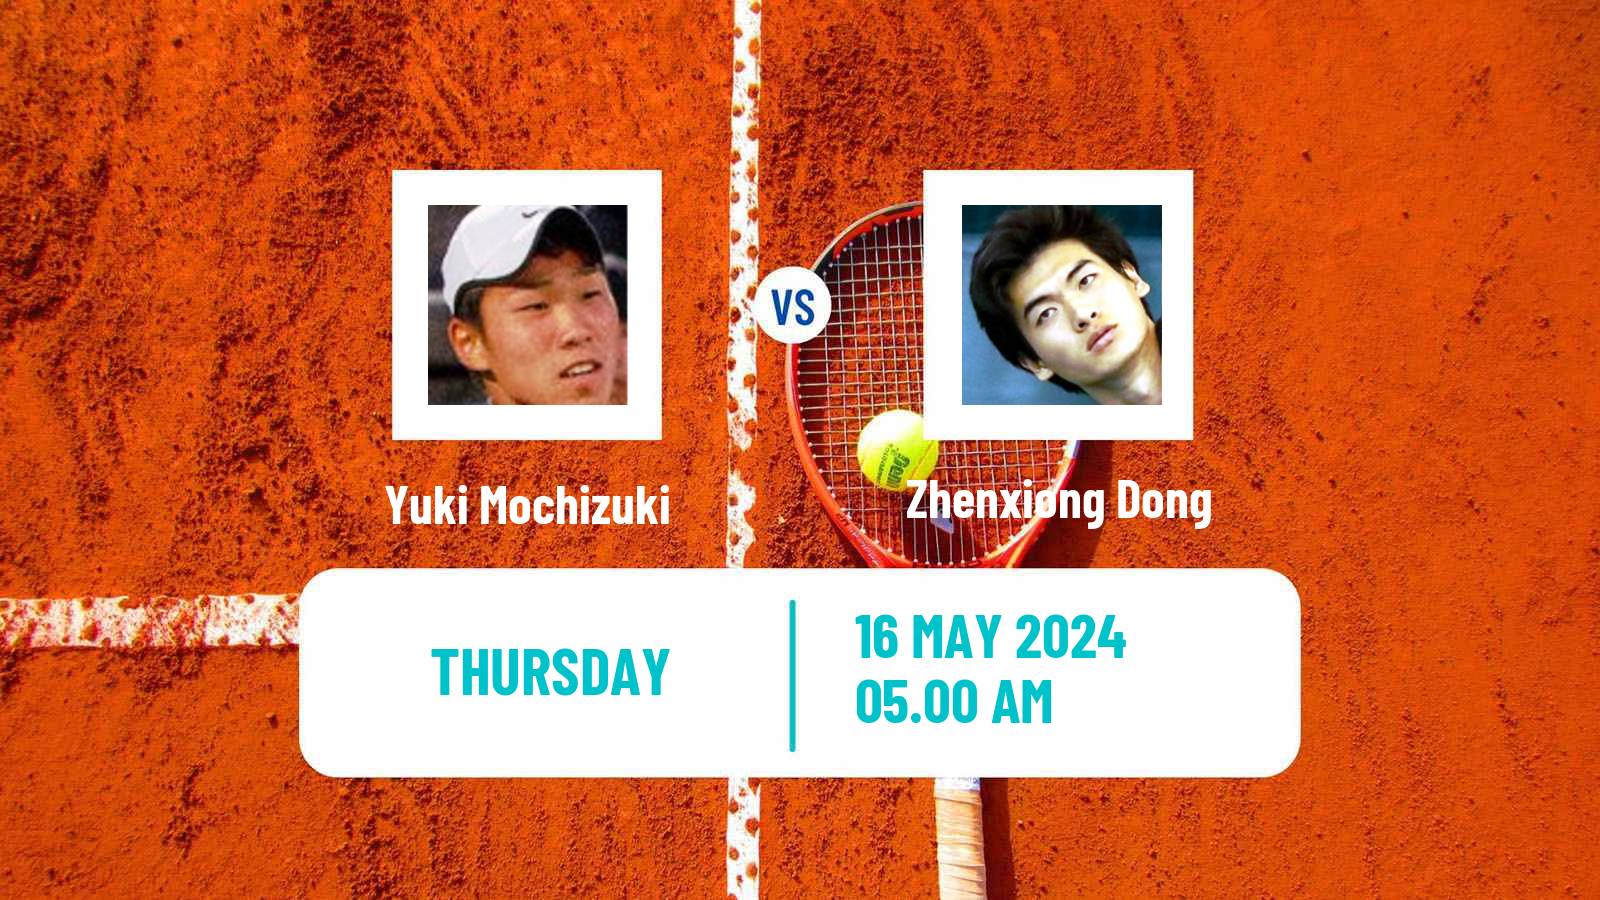 Tennis ITF M25 Luan Men Yuki Mochizuki - Zhenxiong Dong